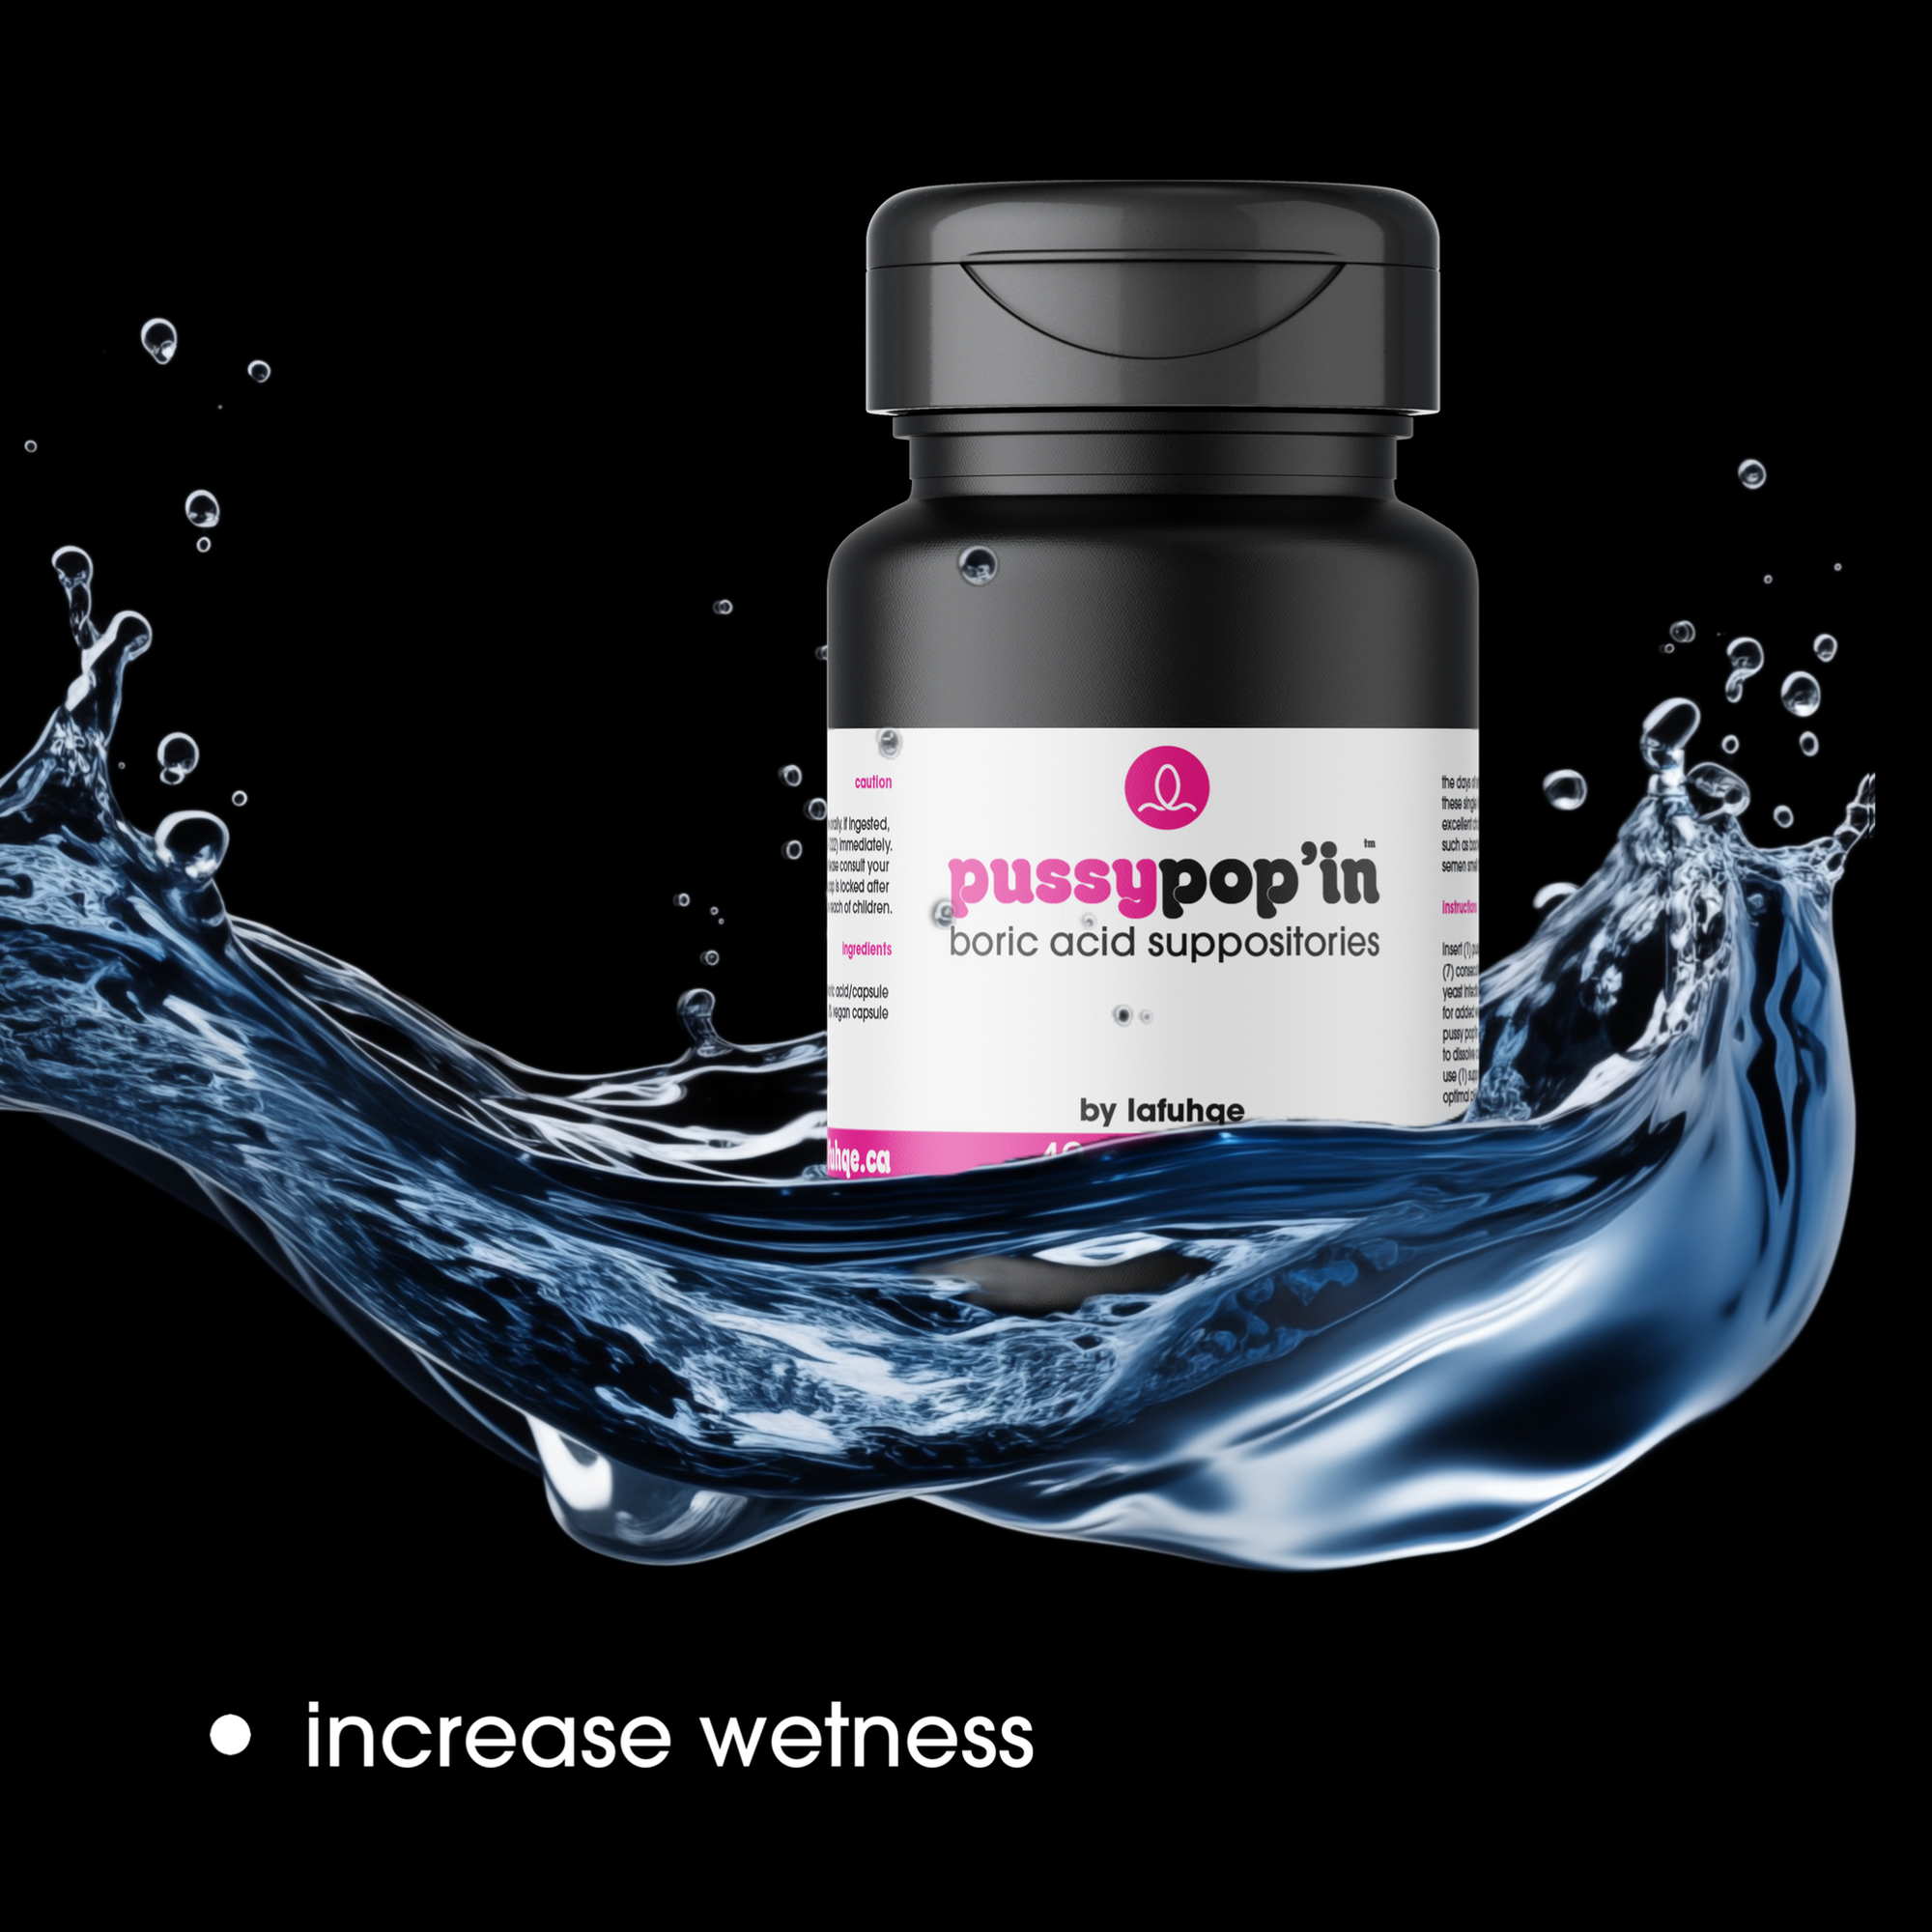 pussypop’in & shampoosy